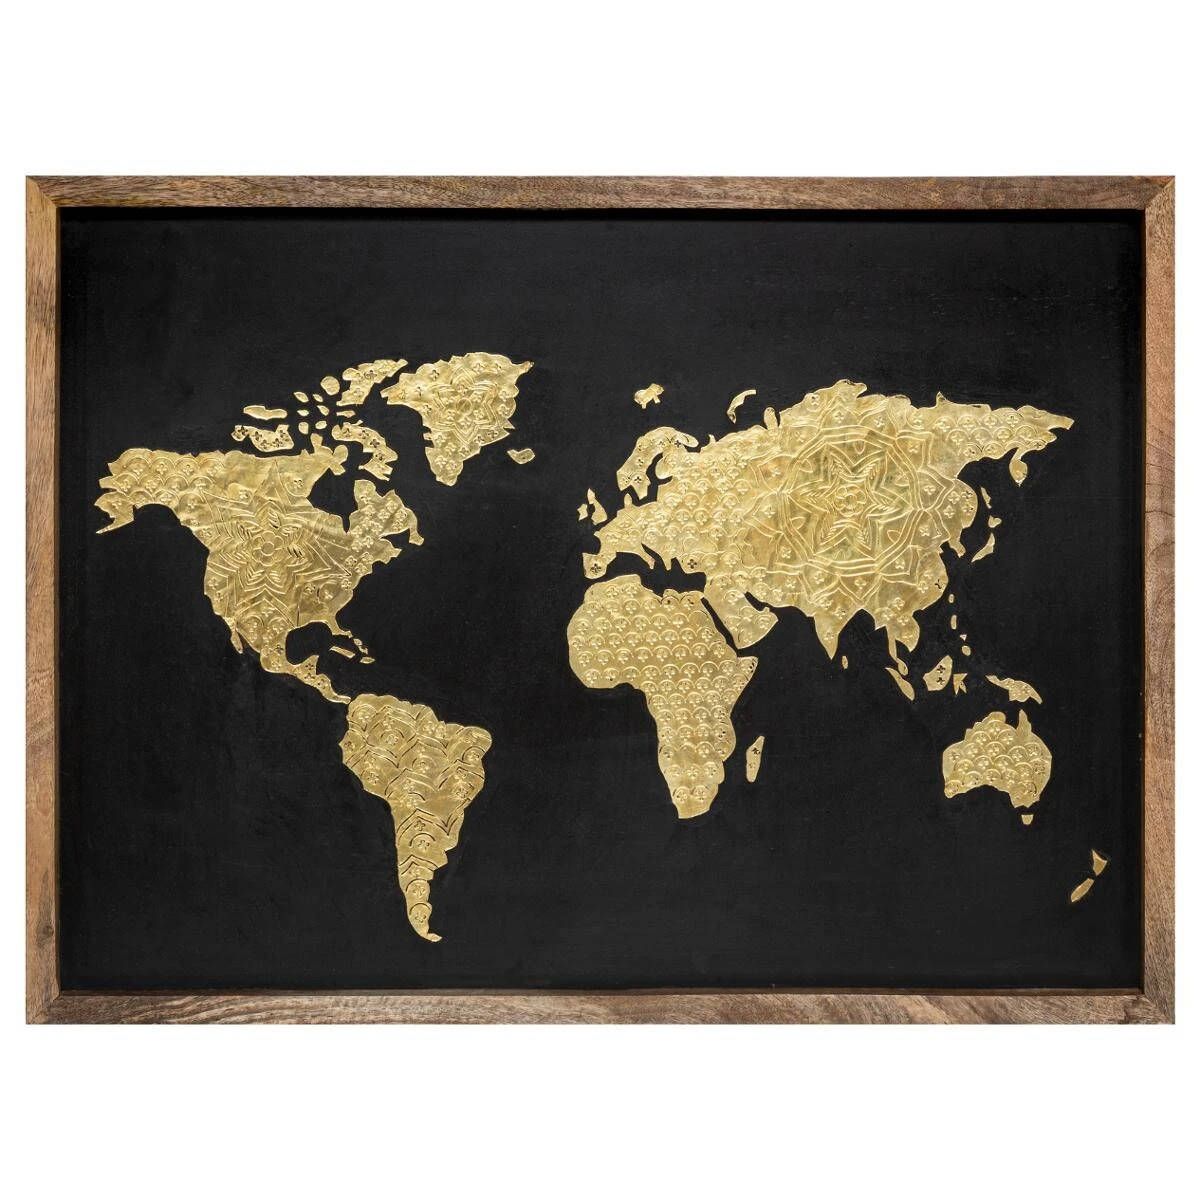 Atmosphera Nástěnná dekorace s mapou světa, 78 x 58 cm, dřevěný rám - EMAKO.CZ s.r.o.